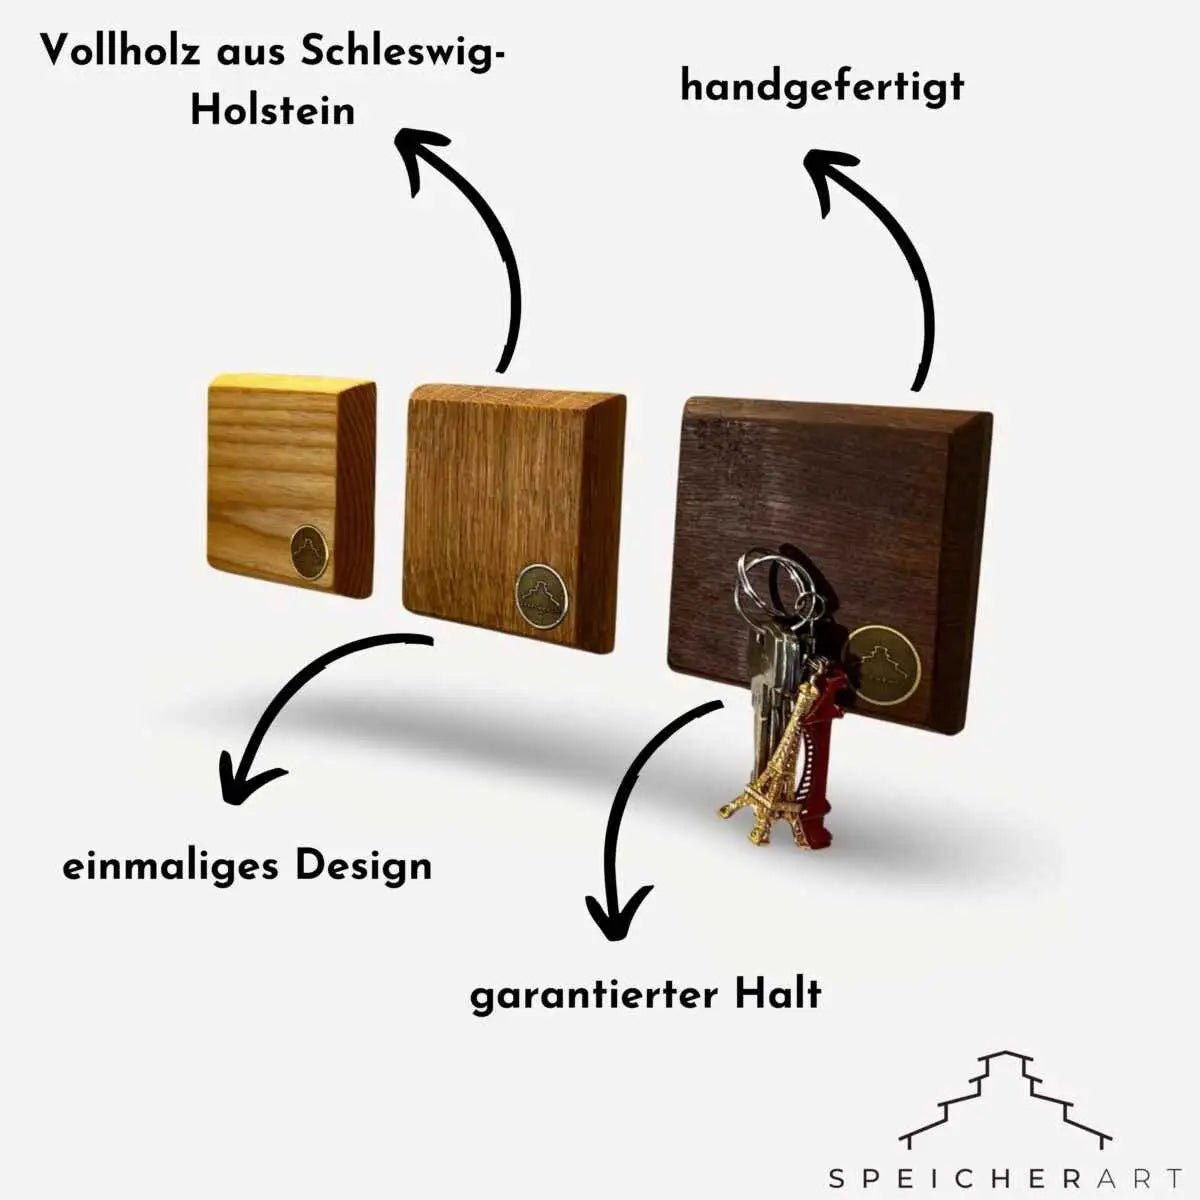 Massivholz Schlüsselboard: Ein eleganter Hingucker und effiziente Schlüsselorganisation in einem.